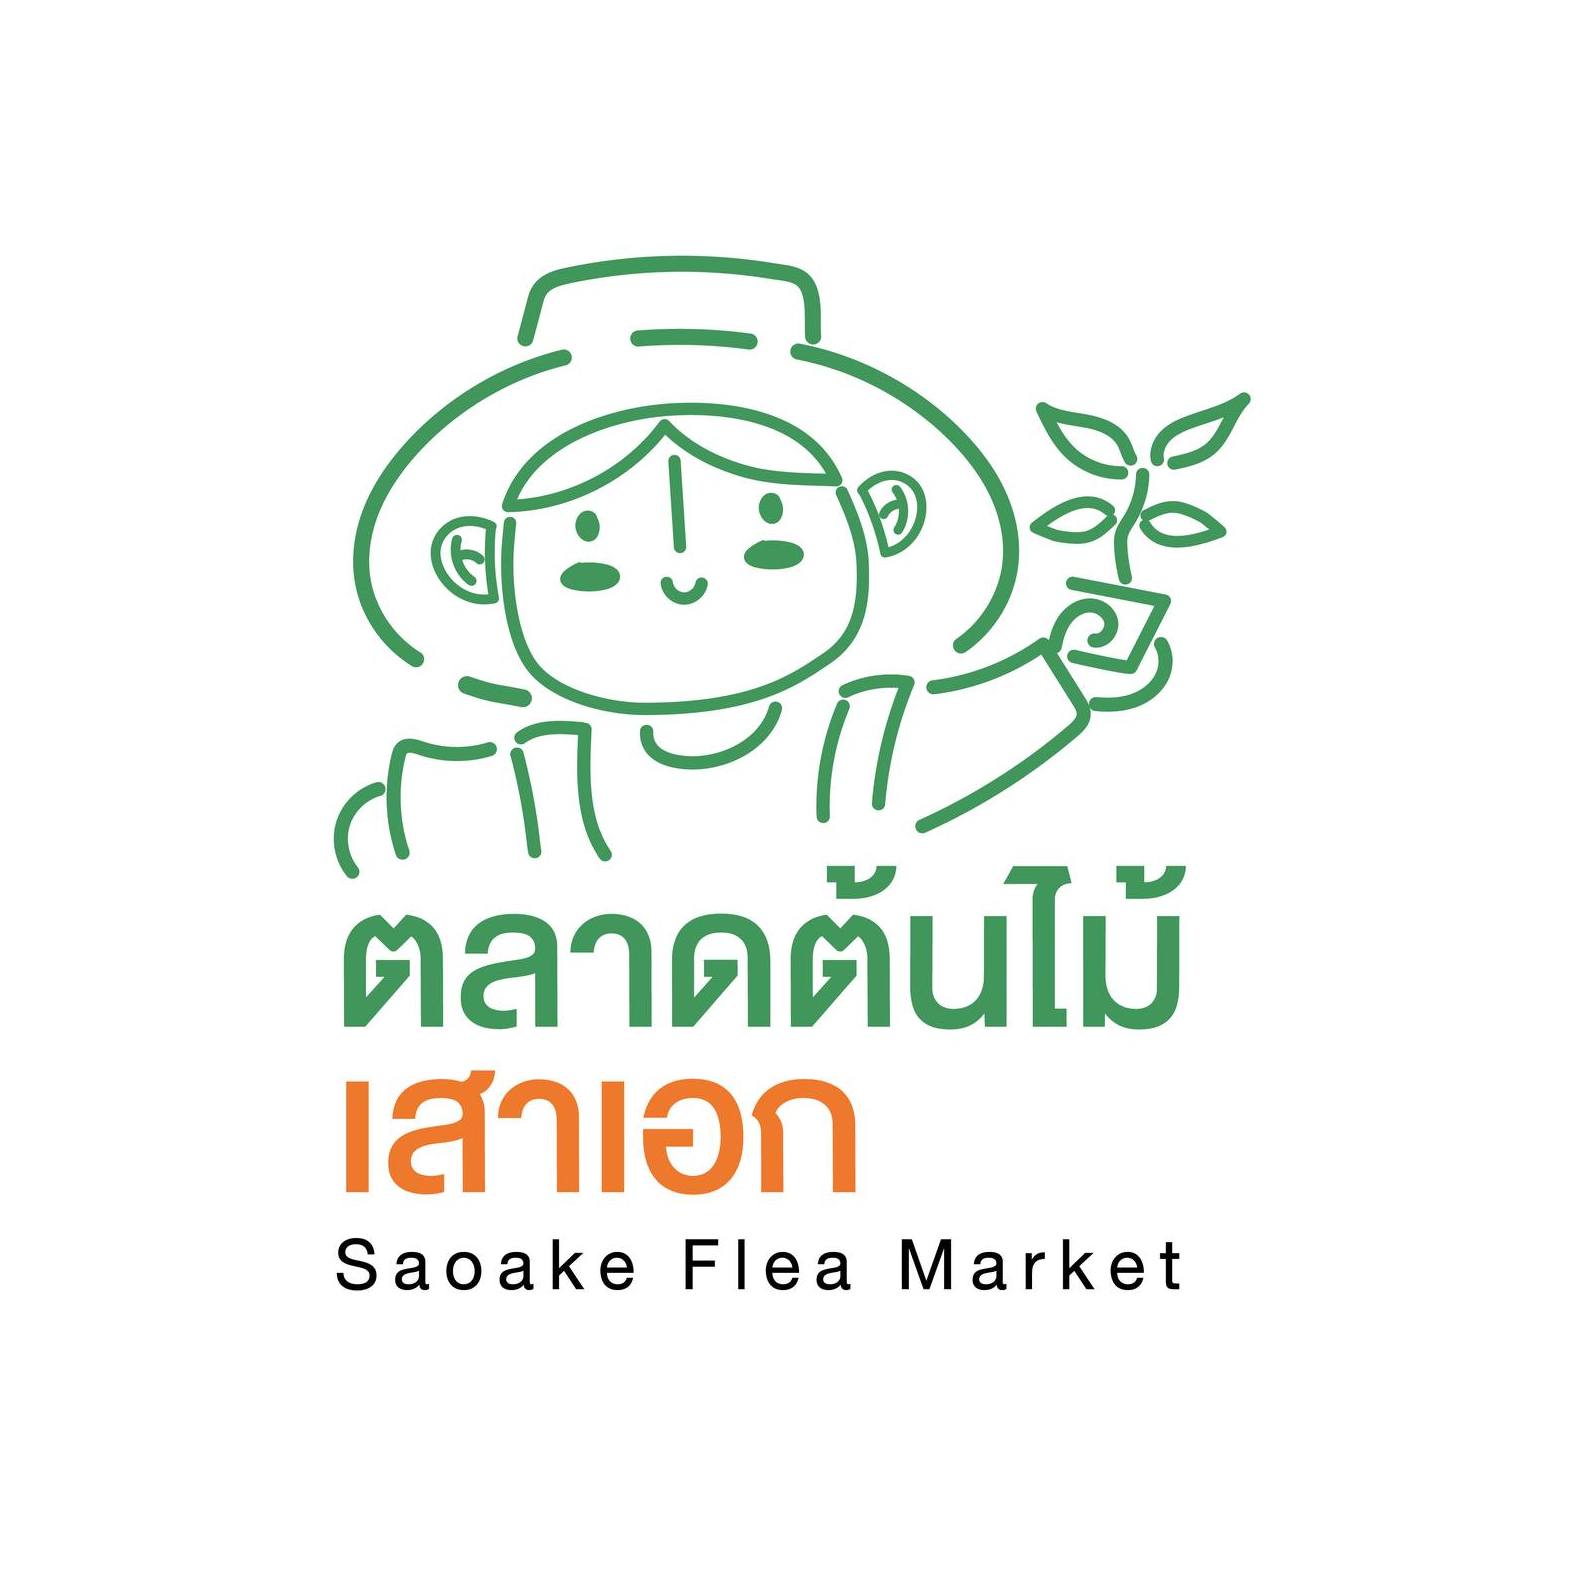 Saoake Flea Market